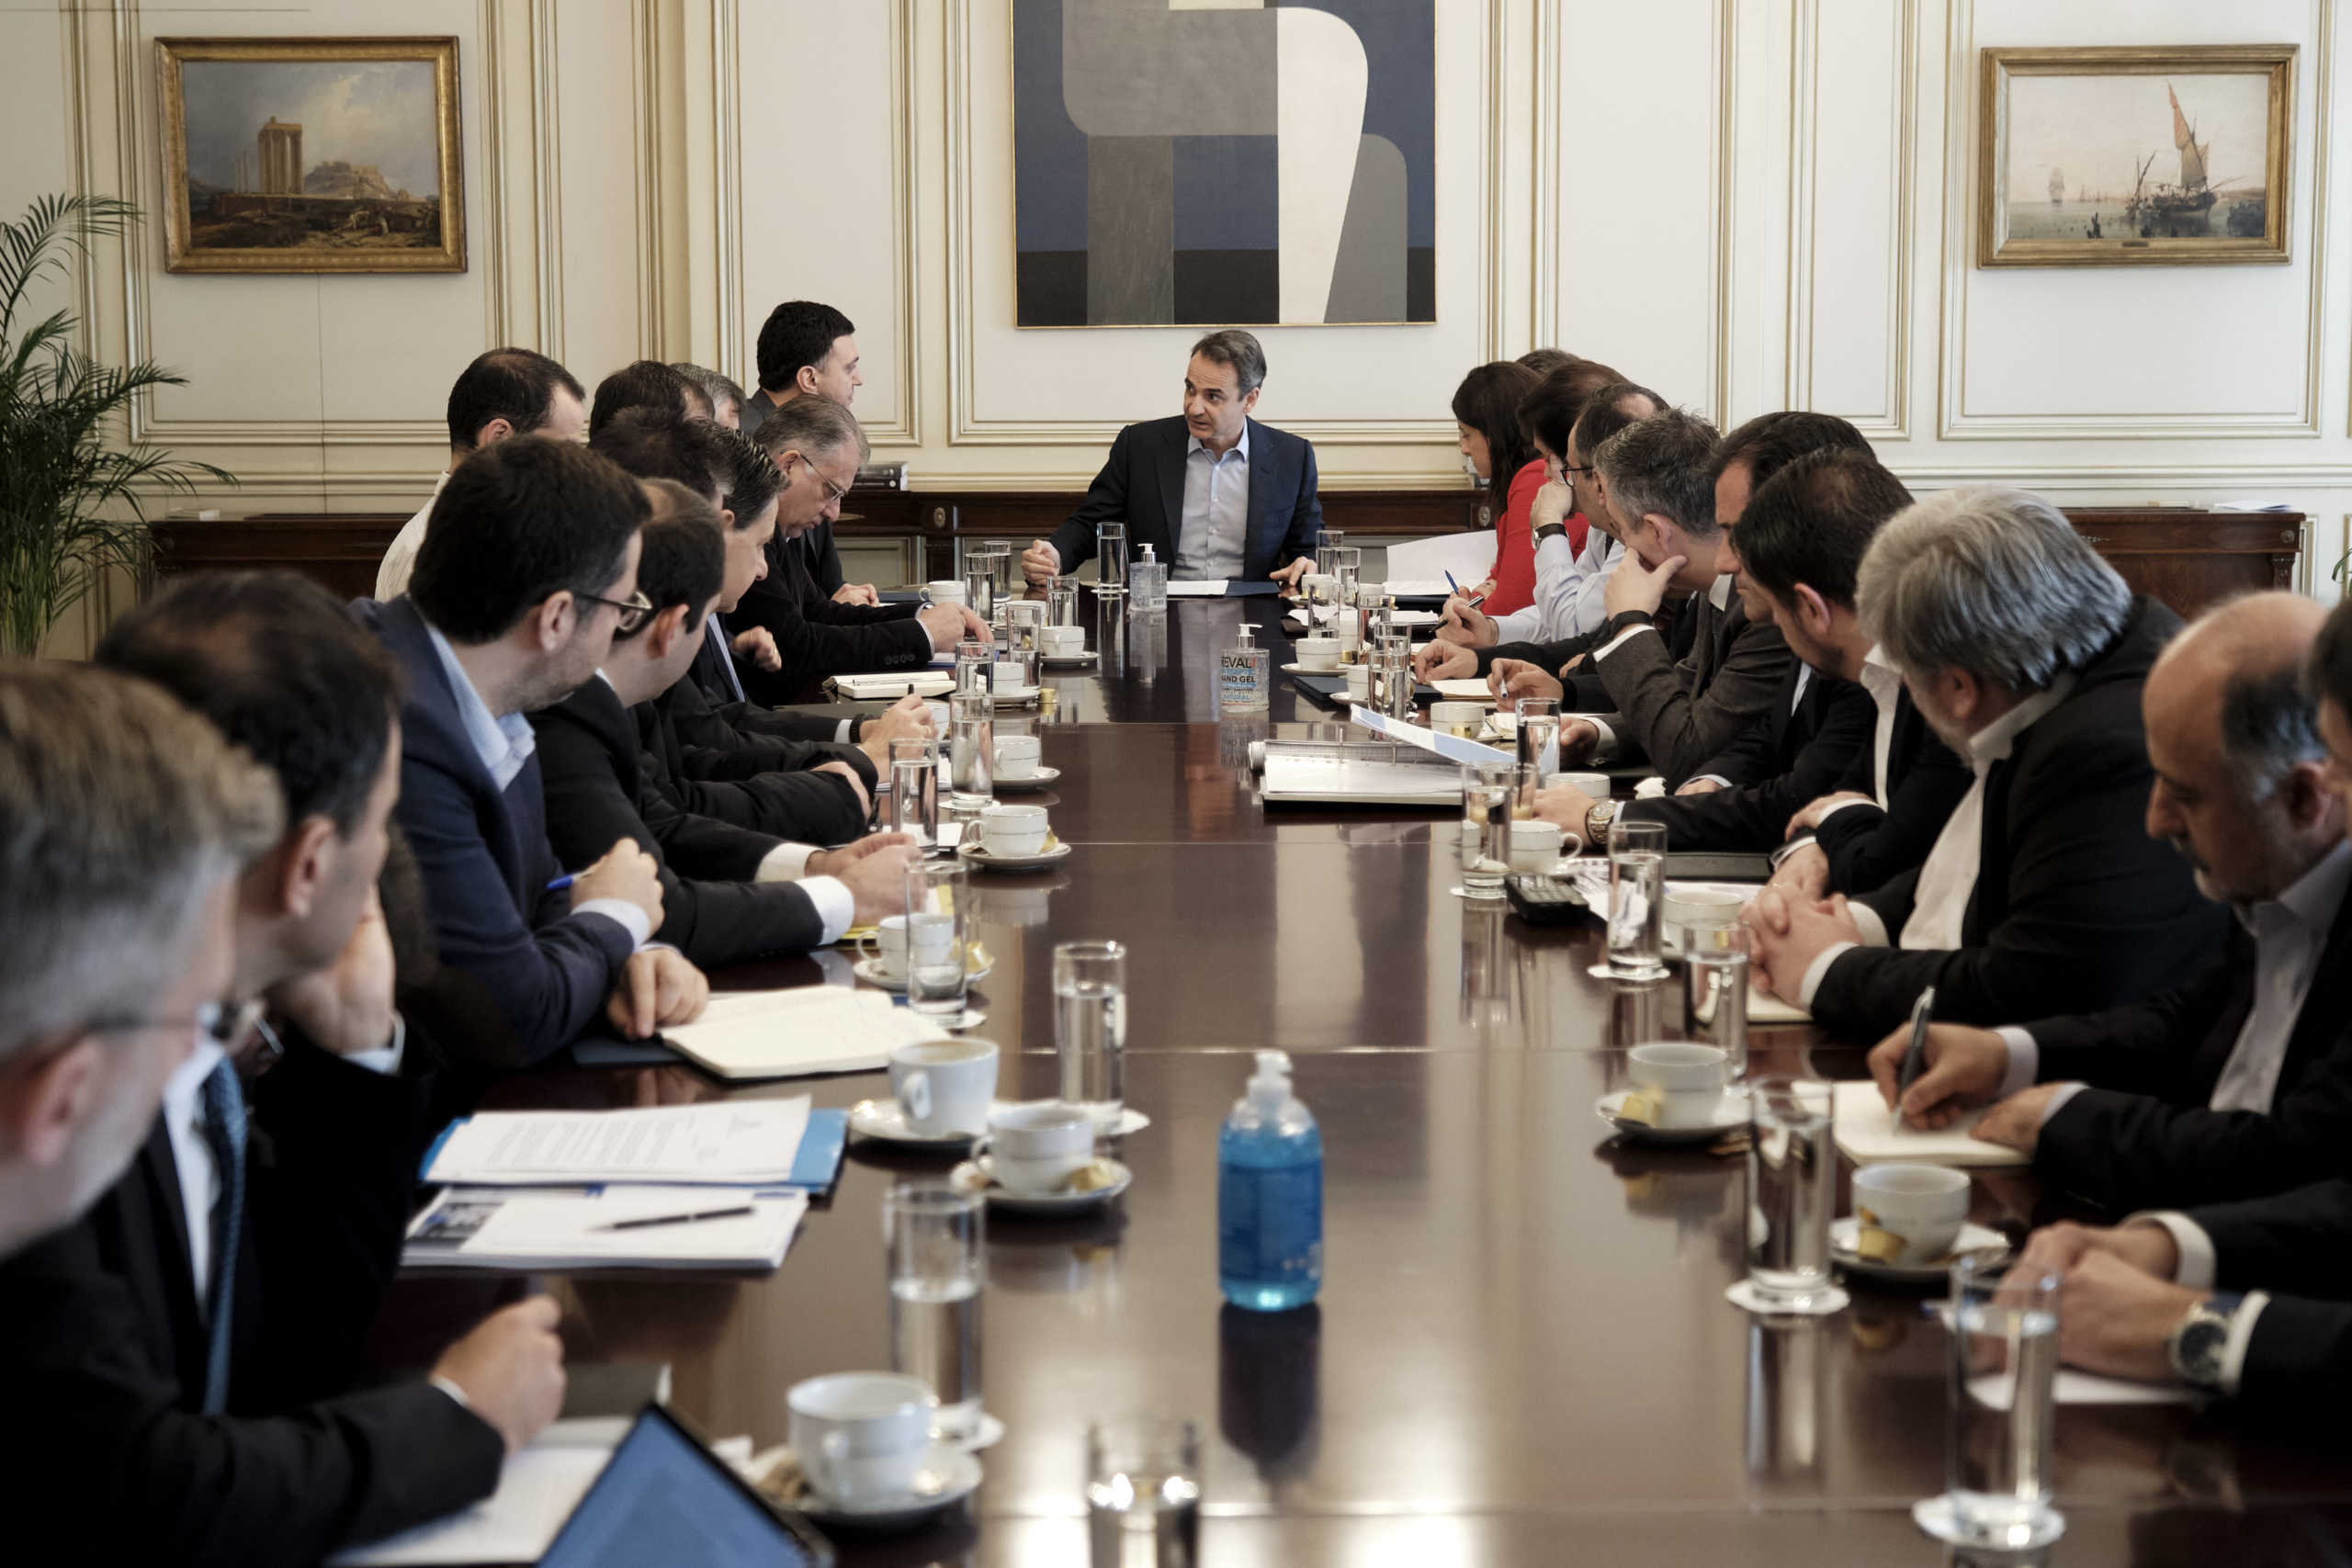 Έβρος: Αποτίμηση της κατάστασης στην σύσκεψη υπό τον πρωθυπουργό